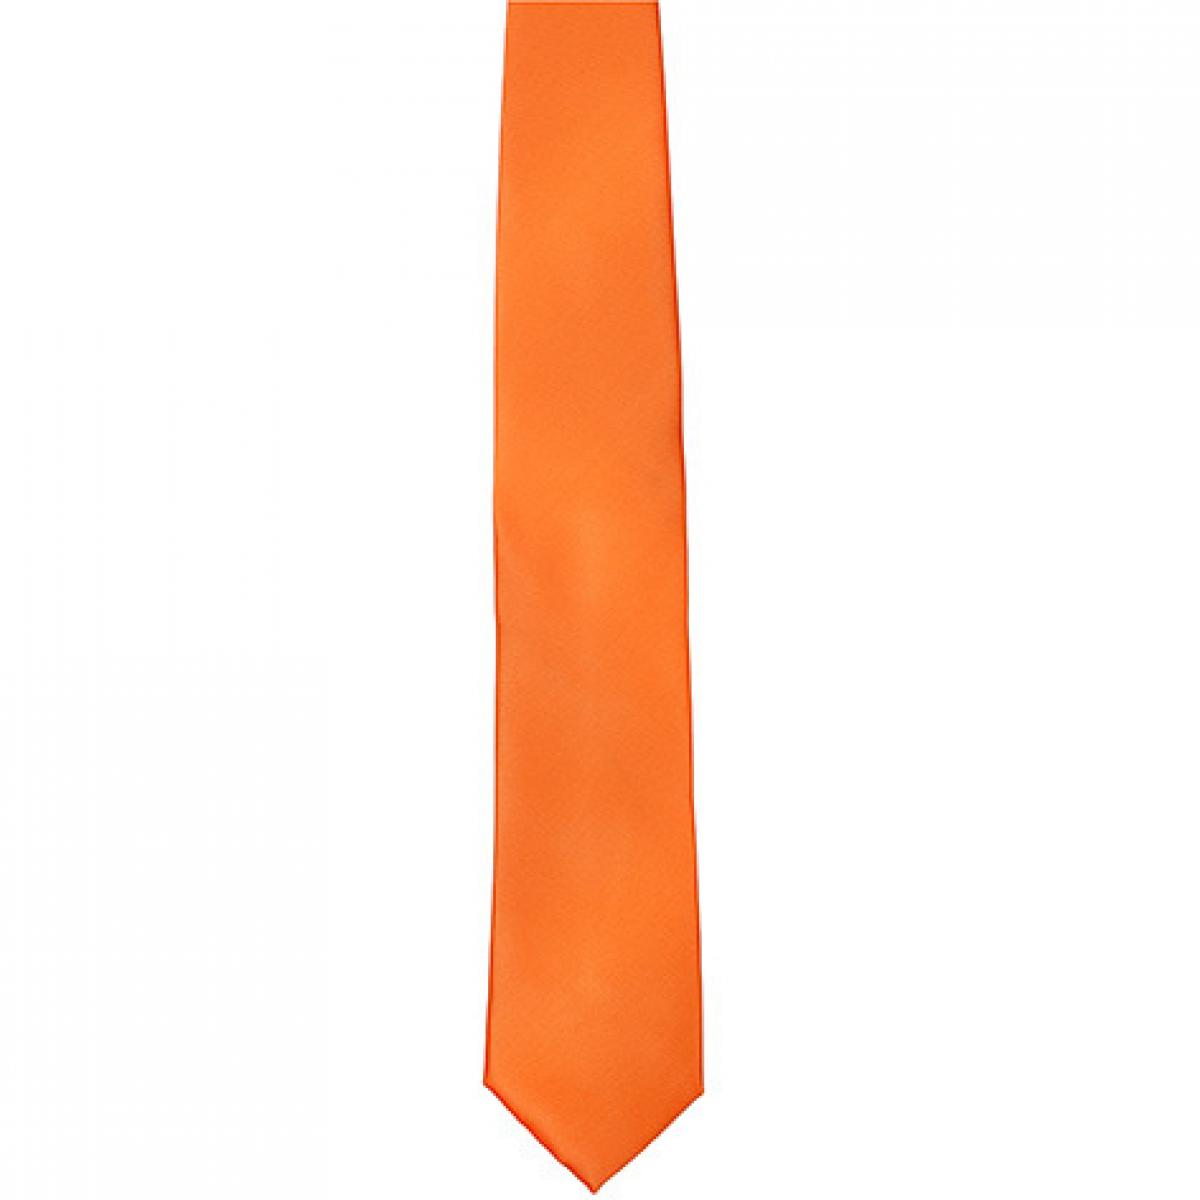 Hersteller: TYTO Herstellernummer: TT901 Artikelbezeichnung: Satin Tie / 144 x 8,5cm /  Zu 100% von Hand genäht Farbe: Orange